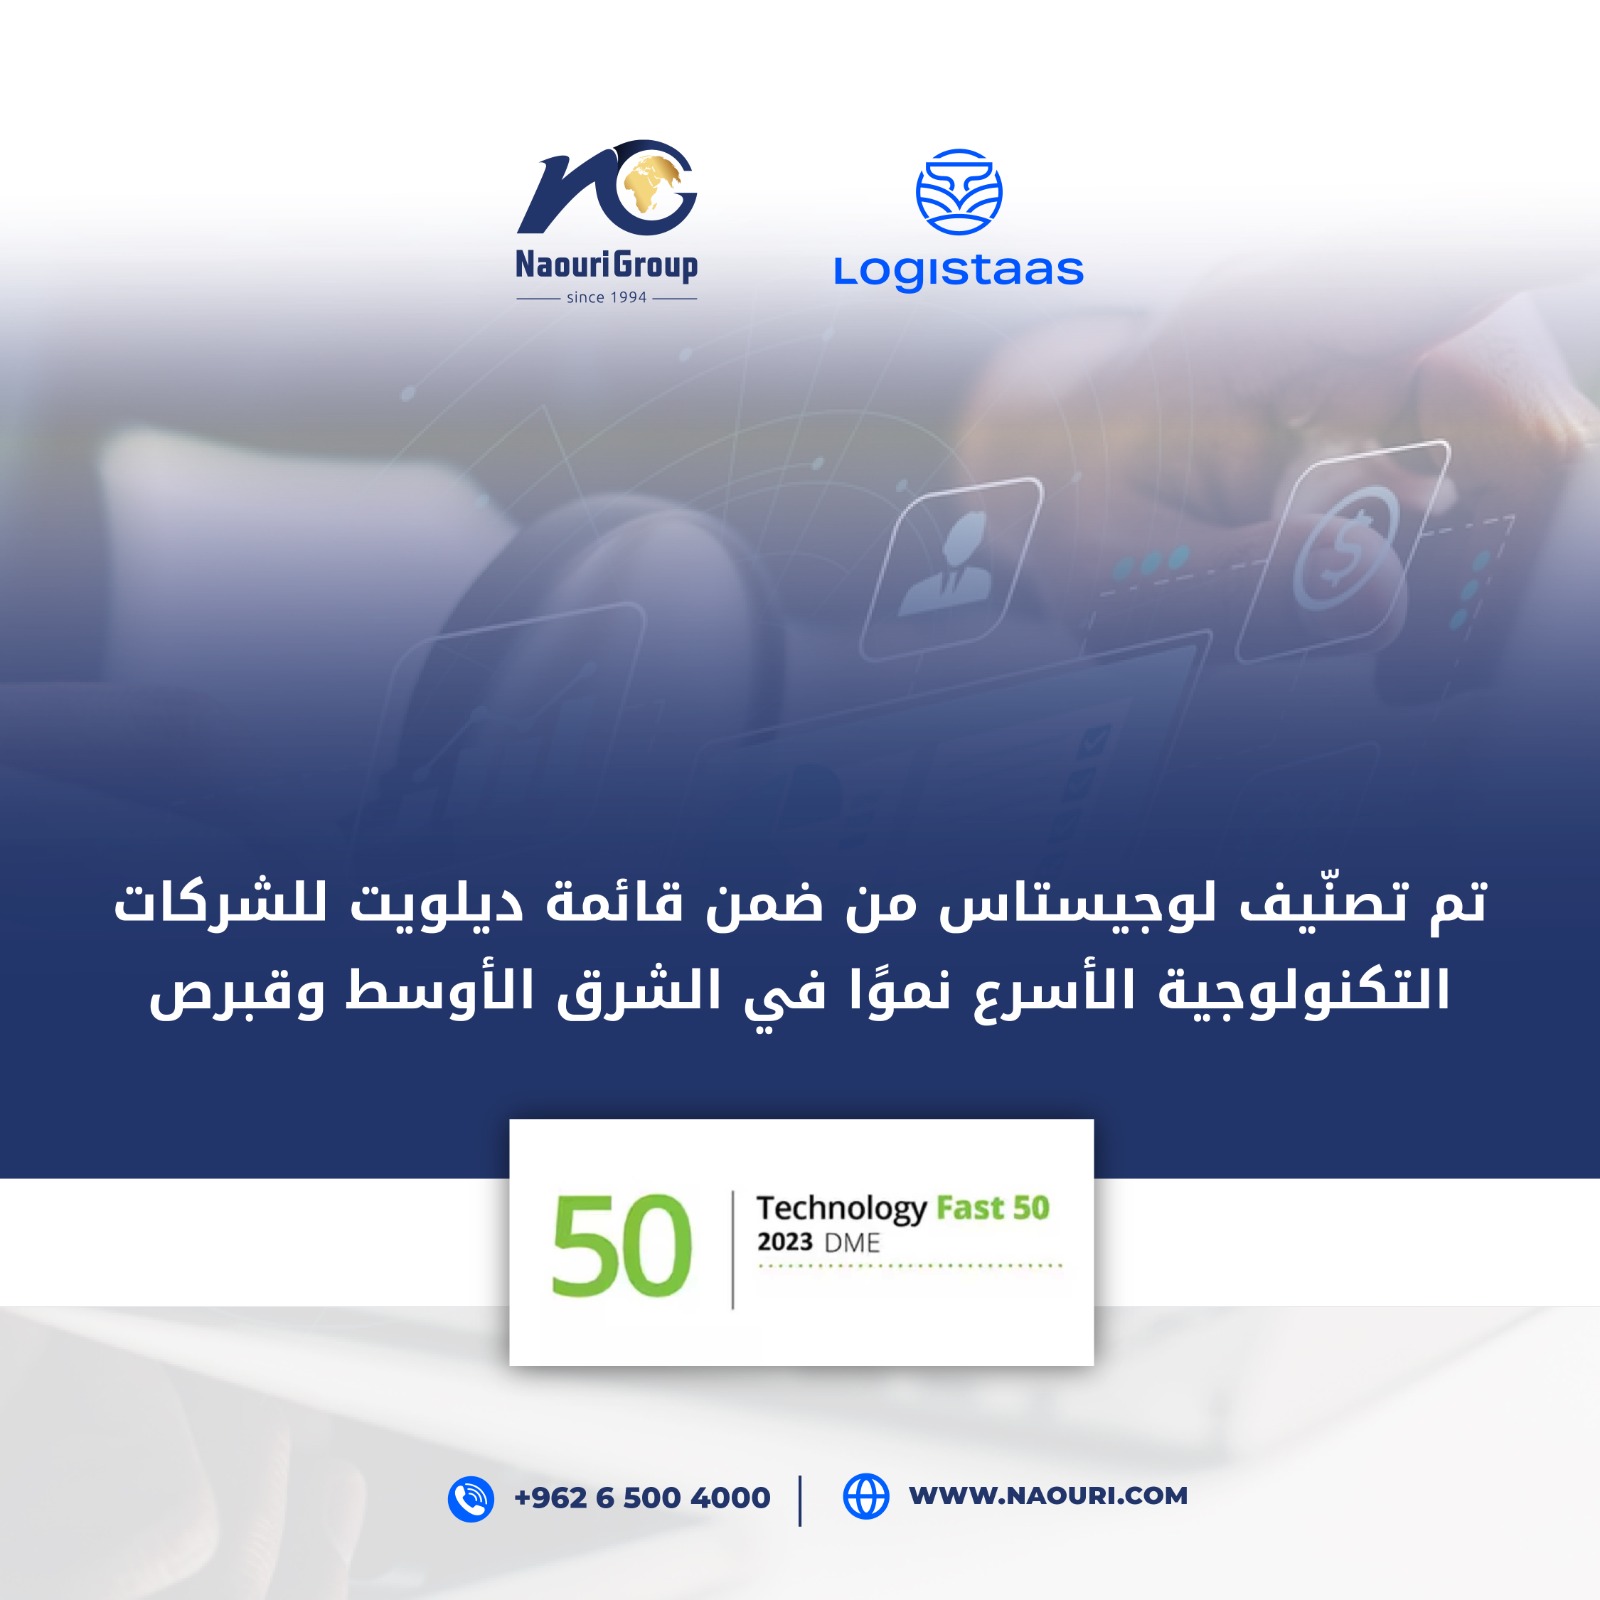 لوجيستاس تُصنف من ضمن قائمة ديلويت للشركات التكنولوجية الأسرع نموًا في الشرق الأوسط وقبرص